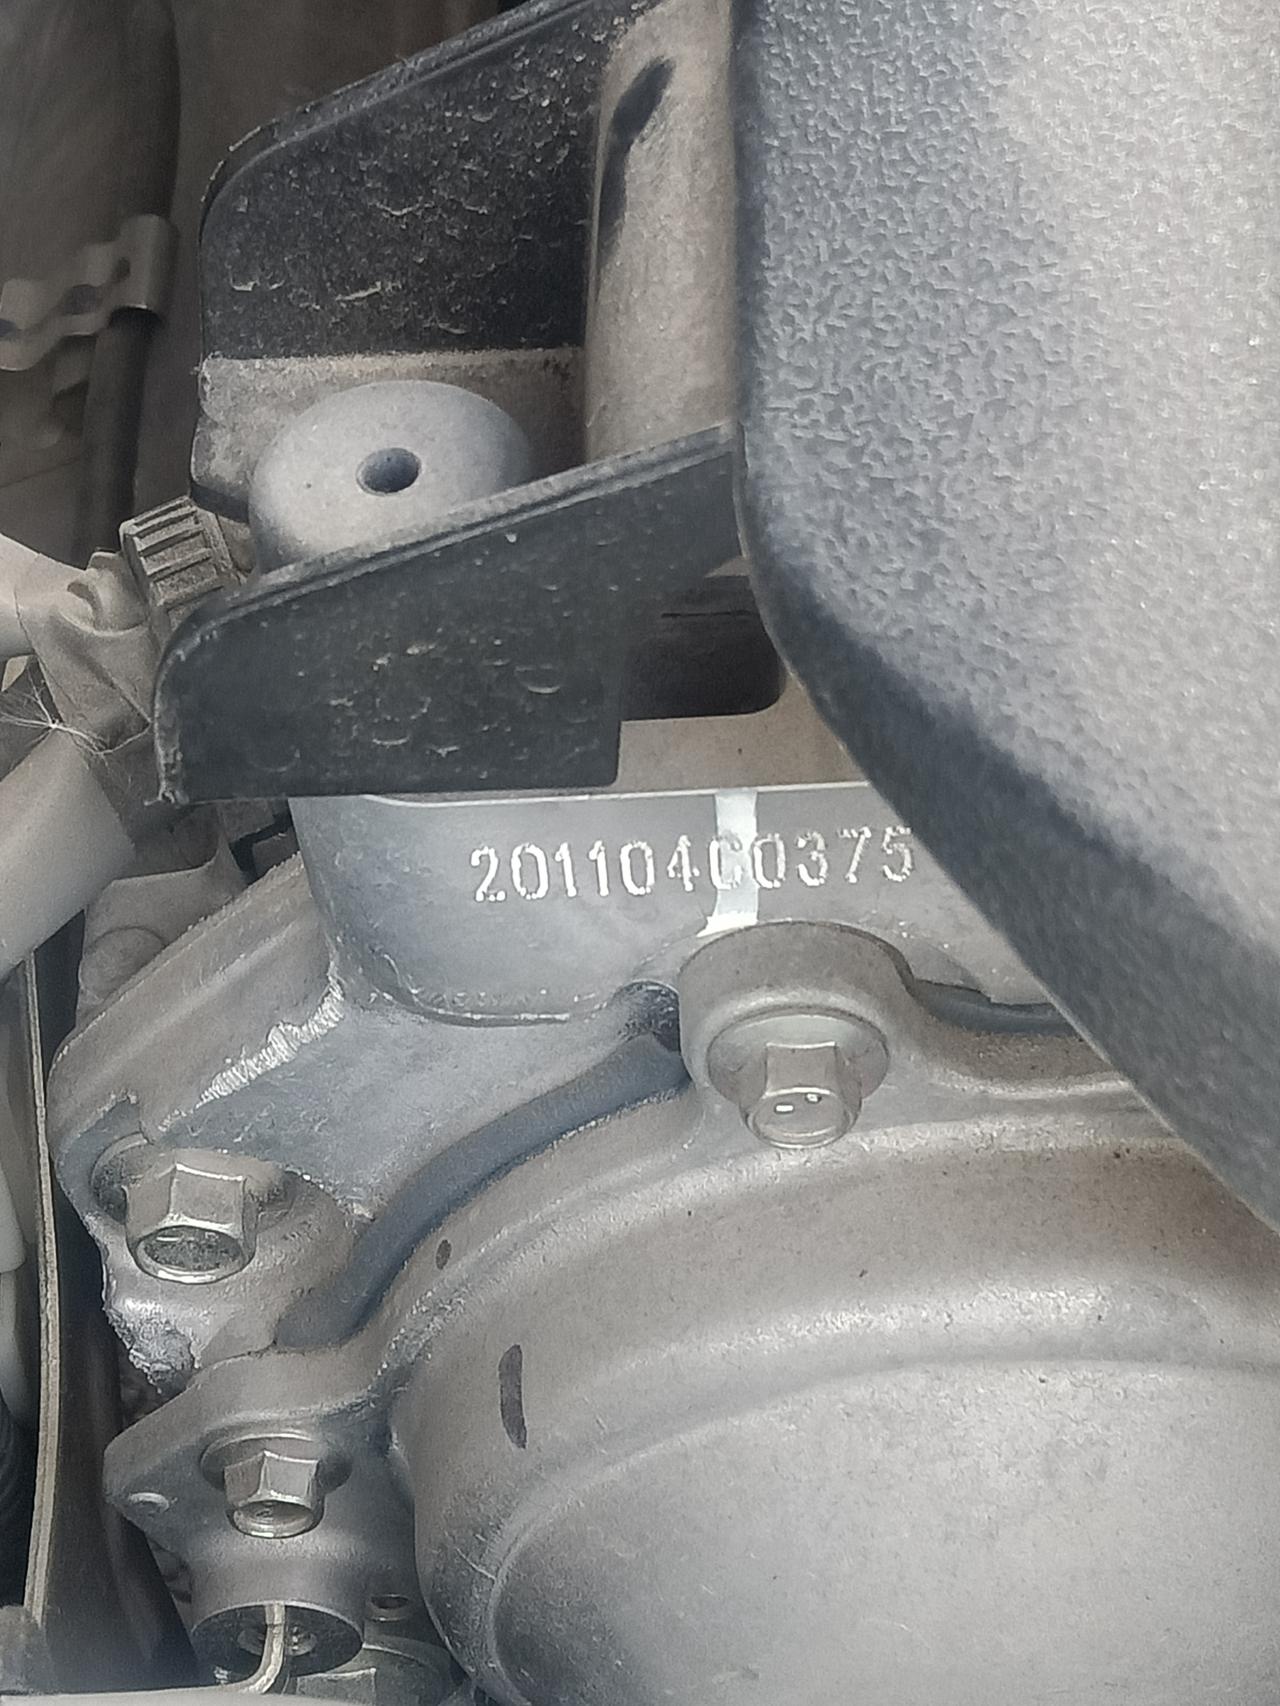 日产奇骏 问一下发动机上的这个编号是什么意思？